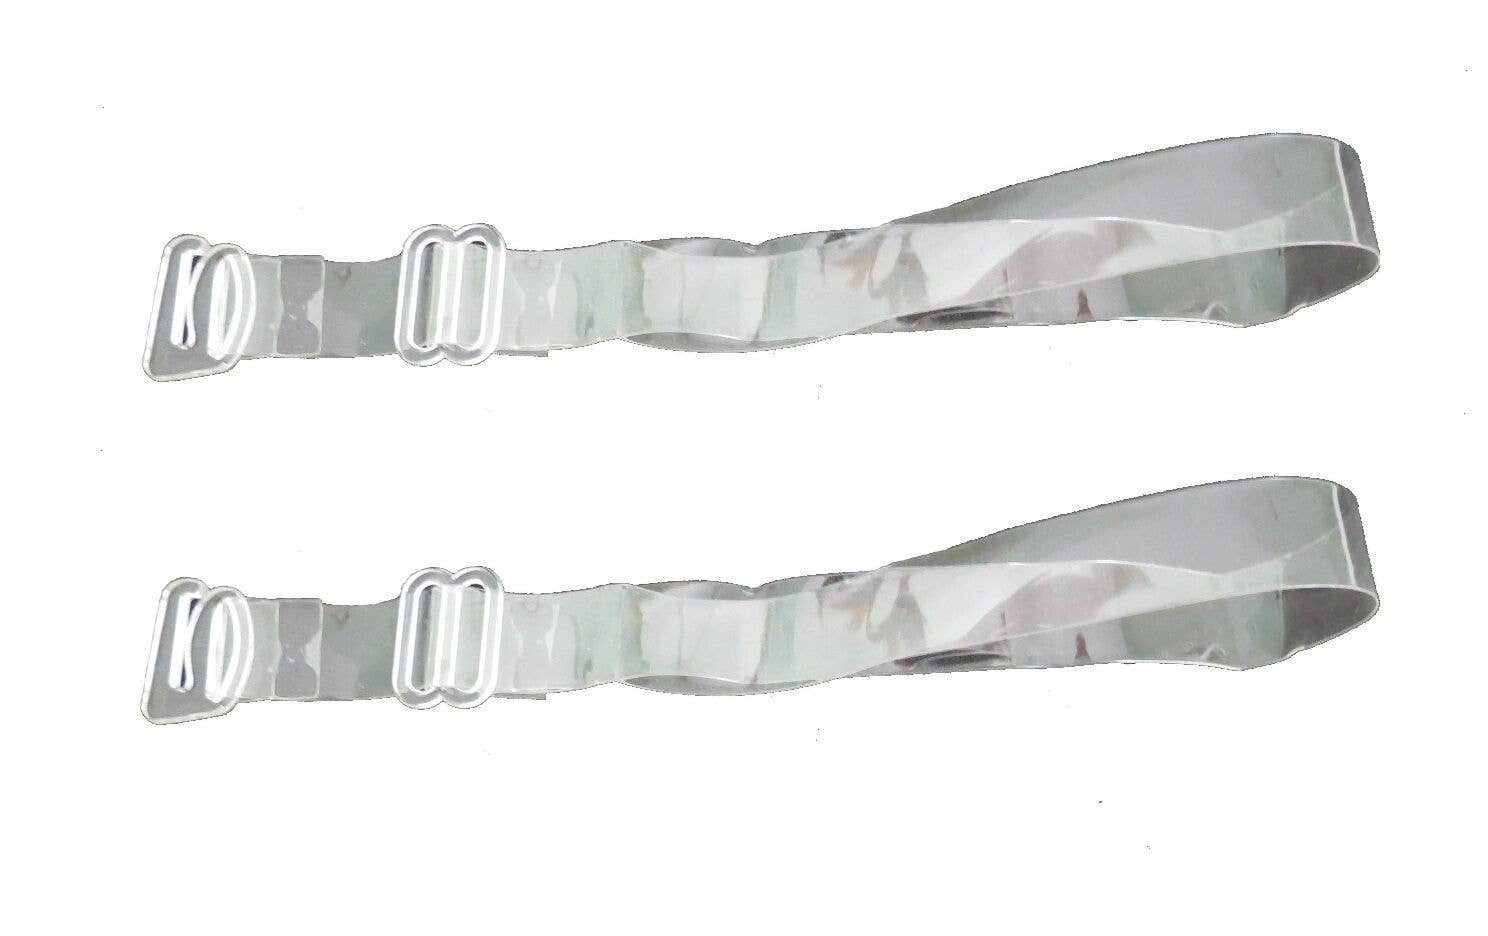 Wholesale Haute Strap Bra Strap Converter - includes 2 straps for